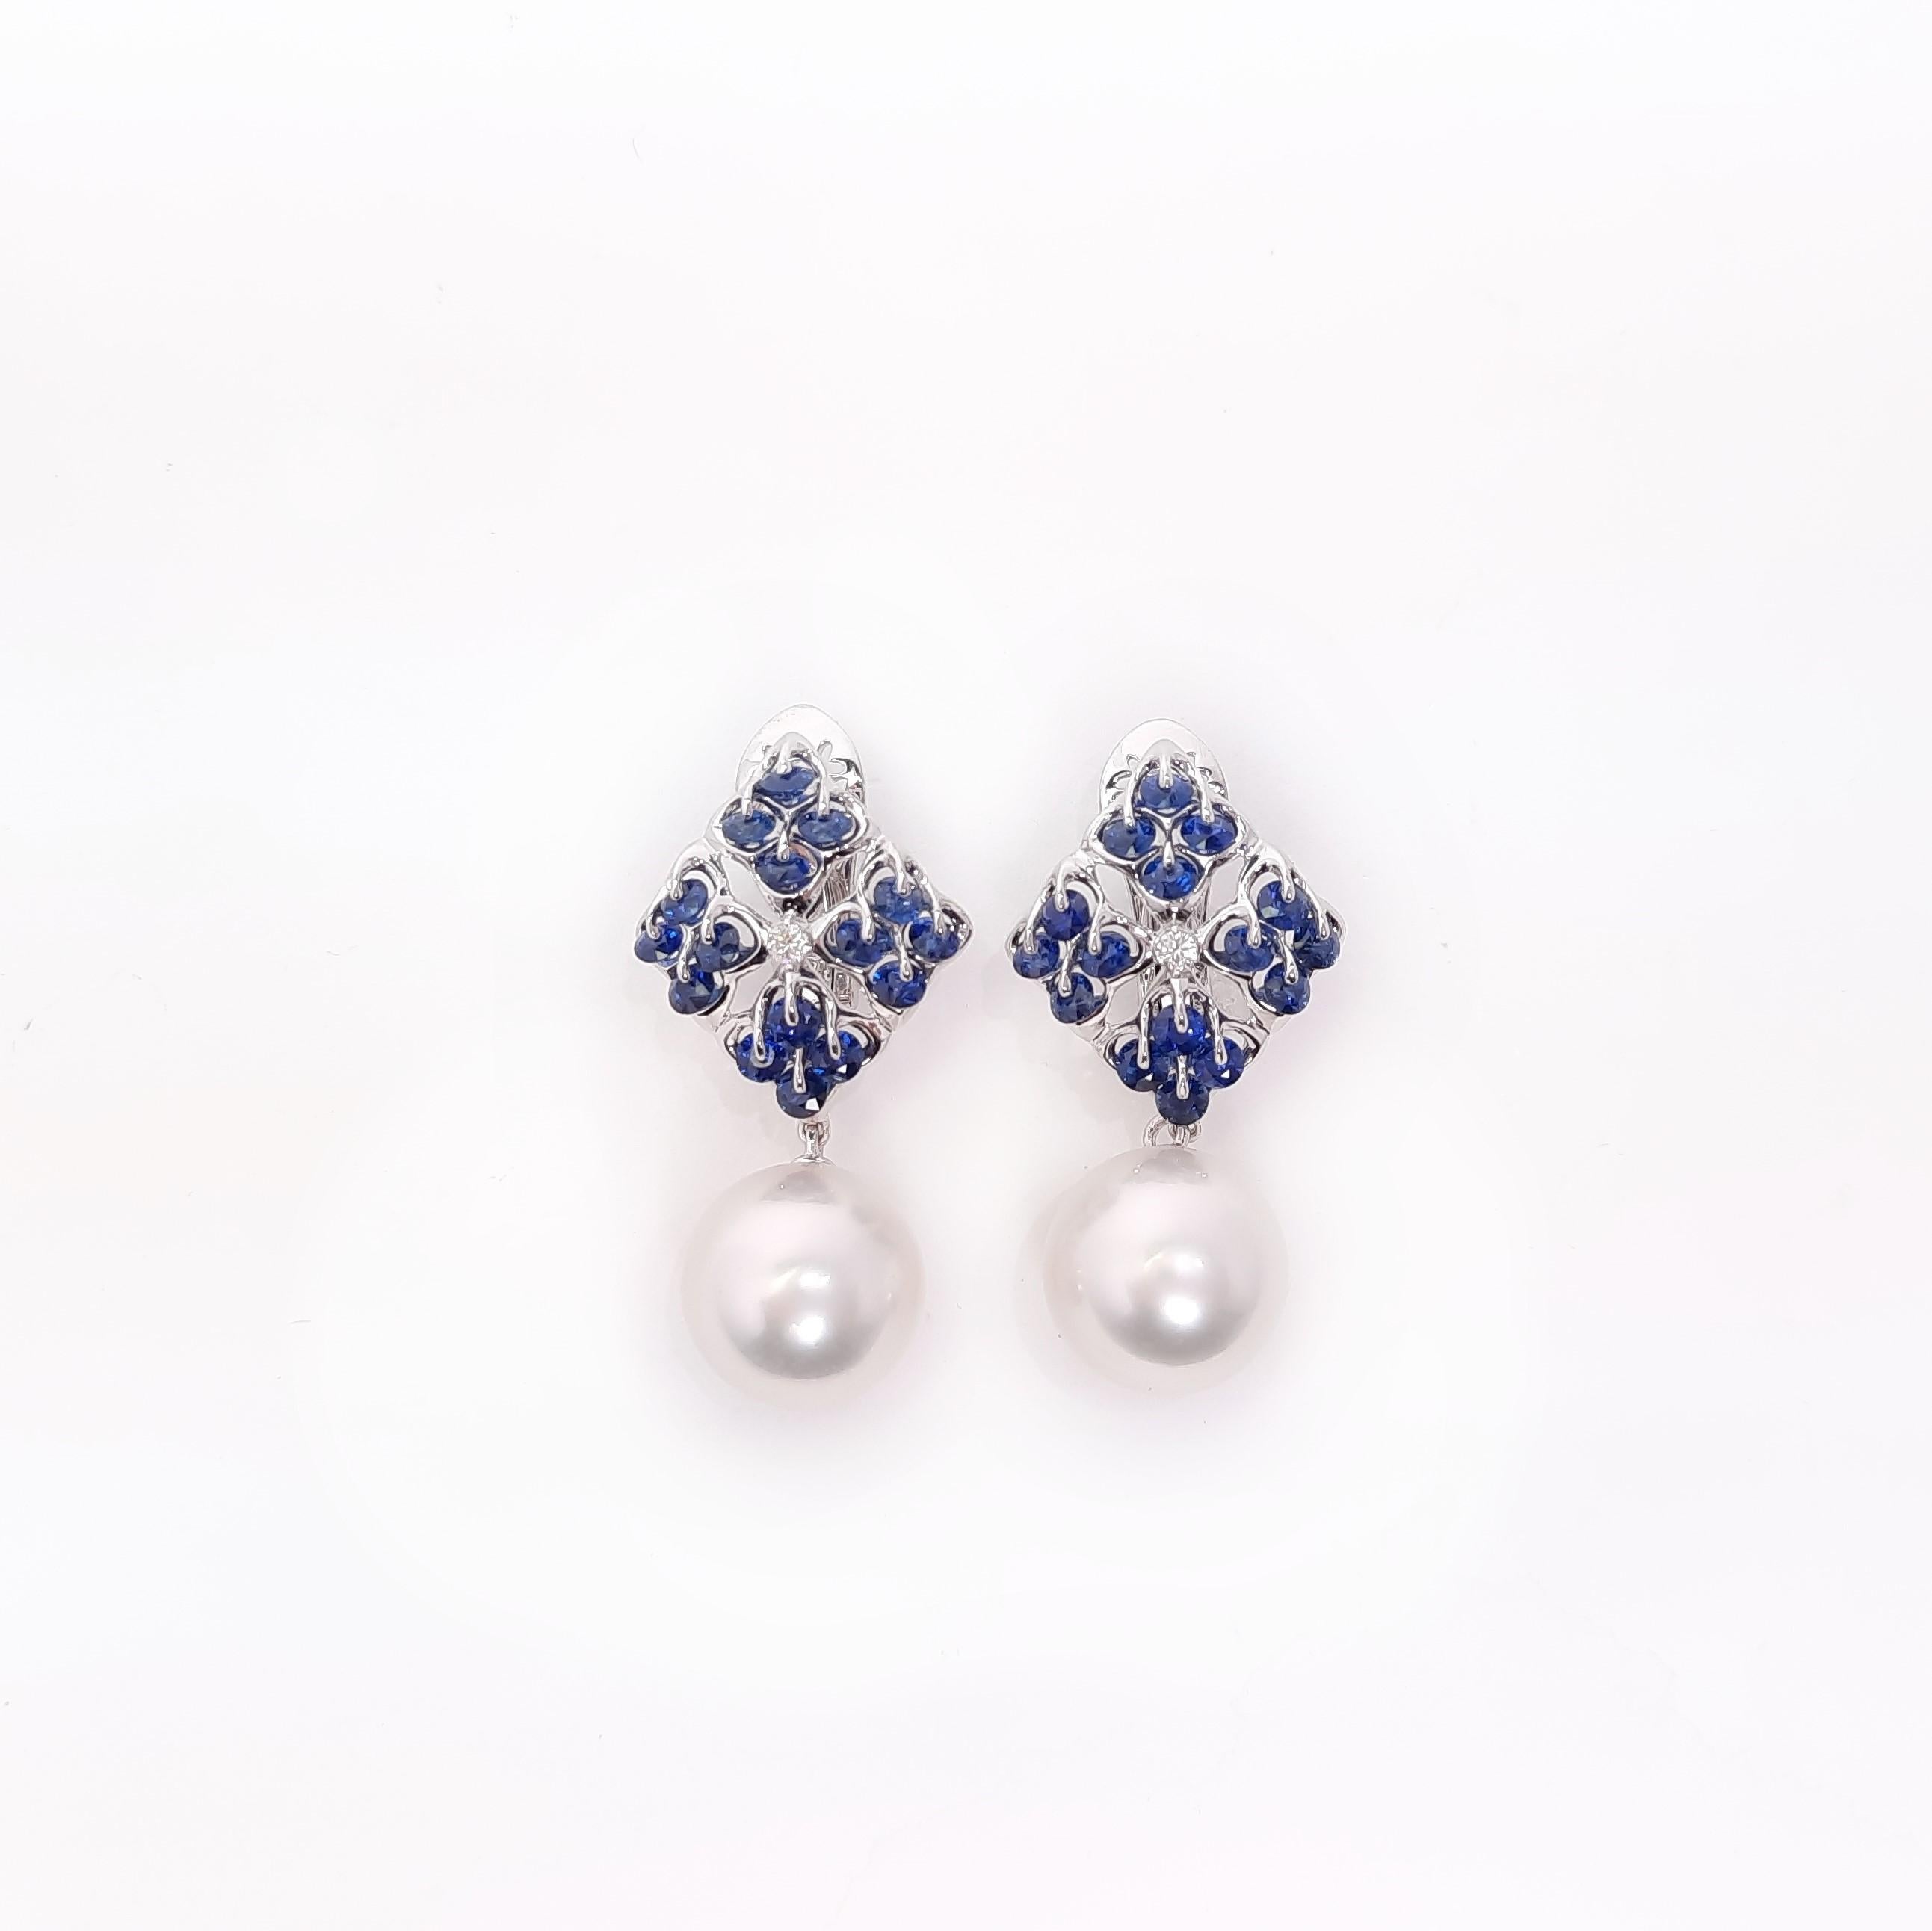 Ein Paar runde 11-mm-Südseeperlen von höchster Qualität ist in unseren sternförmigen Saphir-Ohrringen elegant gestaltet und in einer einzigartigen Edelsteinfassung montiert, Waltzing Brilliance. Ein spektakulärer Tanz von blauen Saphiren im